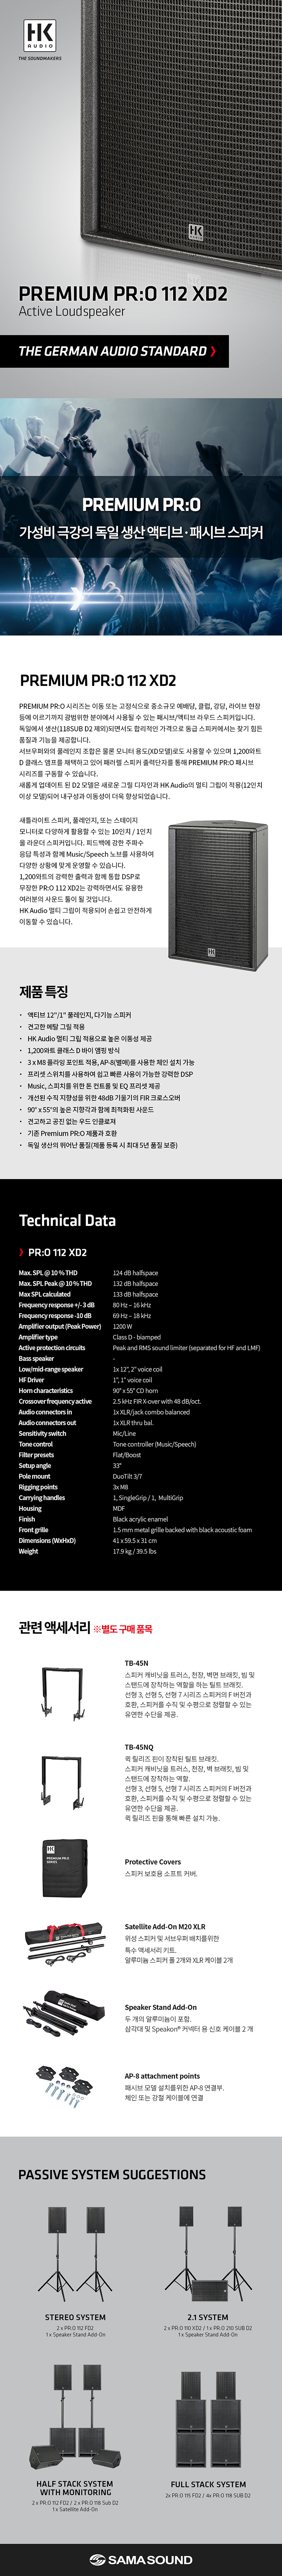 HK Audio Pro 112 XD2